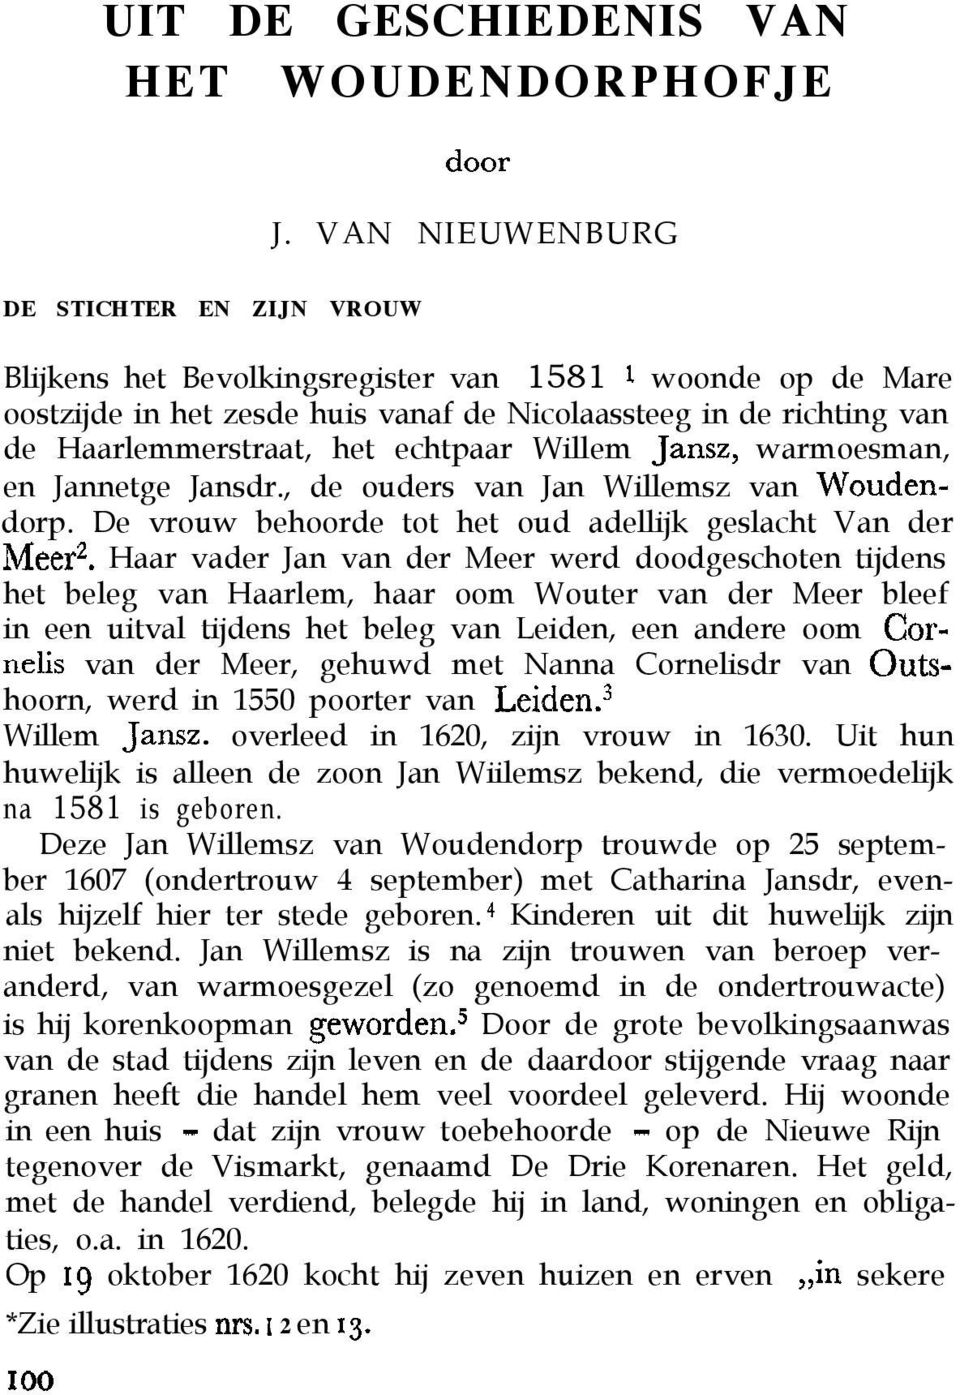 echtpaar Willem Jansz, warmoesman, en Jannetge Jansdr., de ouders van Jan Willemsz van Woudendorp. De vrouw behoorde tot het oud adellijk geslacht Van der Meer?